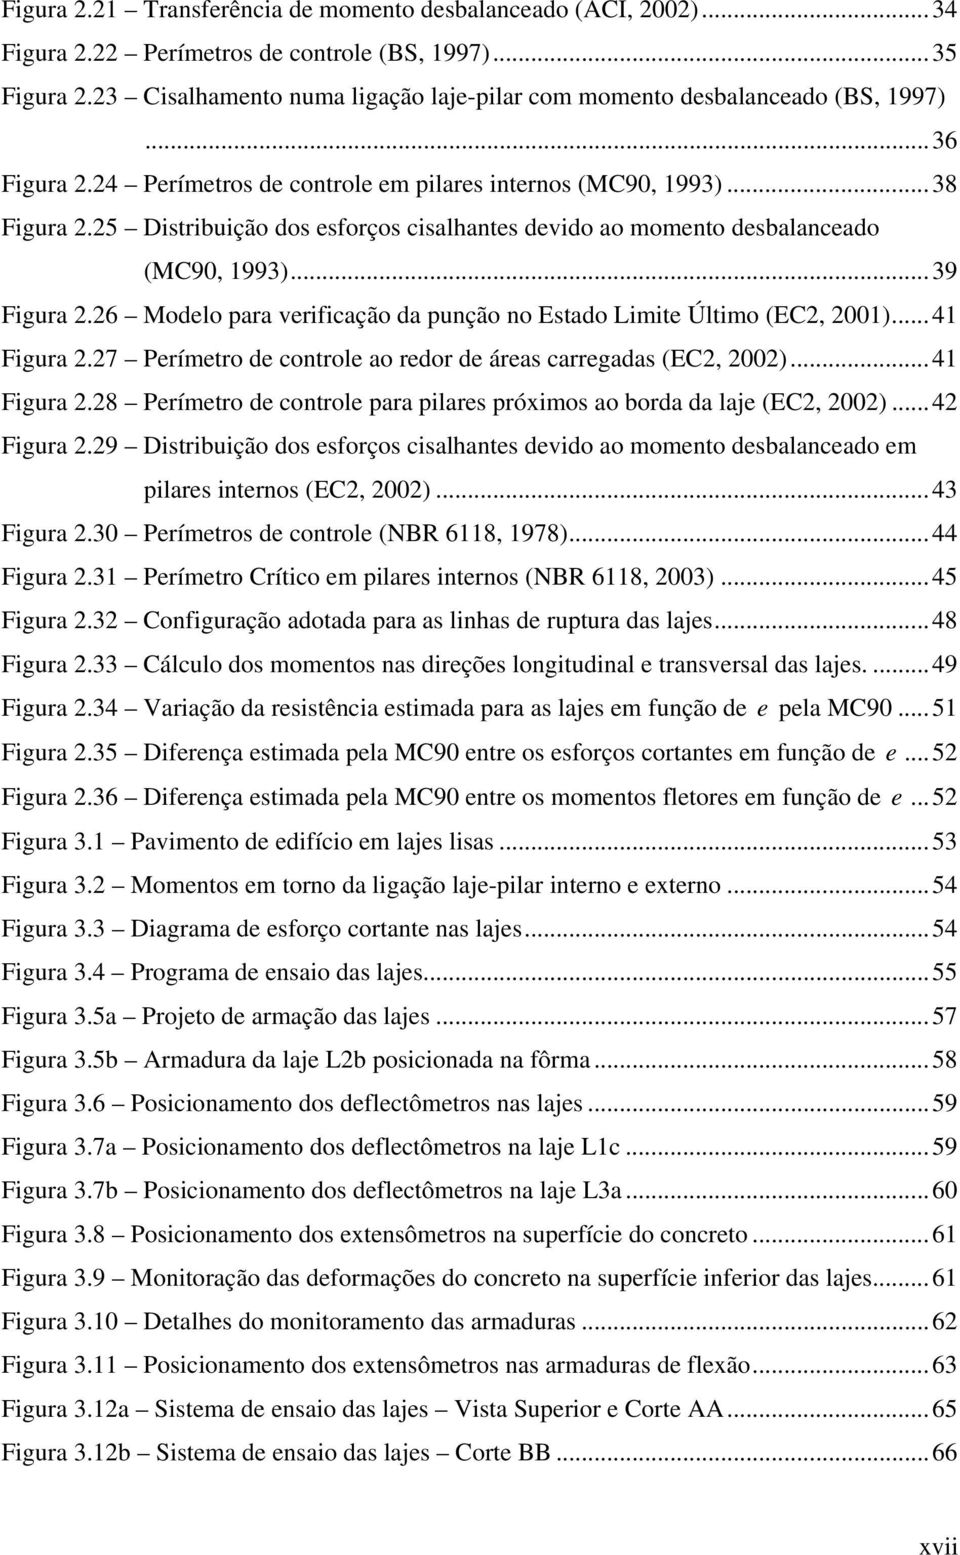 25 Distribuição dos esforços cisalhantes devido ao momento desbalanceado (MC9, 1993)...39 Figura 2.26 Modelo para verificação da punção no Estado Limite Último (EC2, 21)...41 Figura 2.